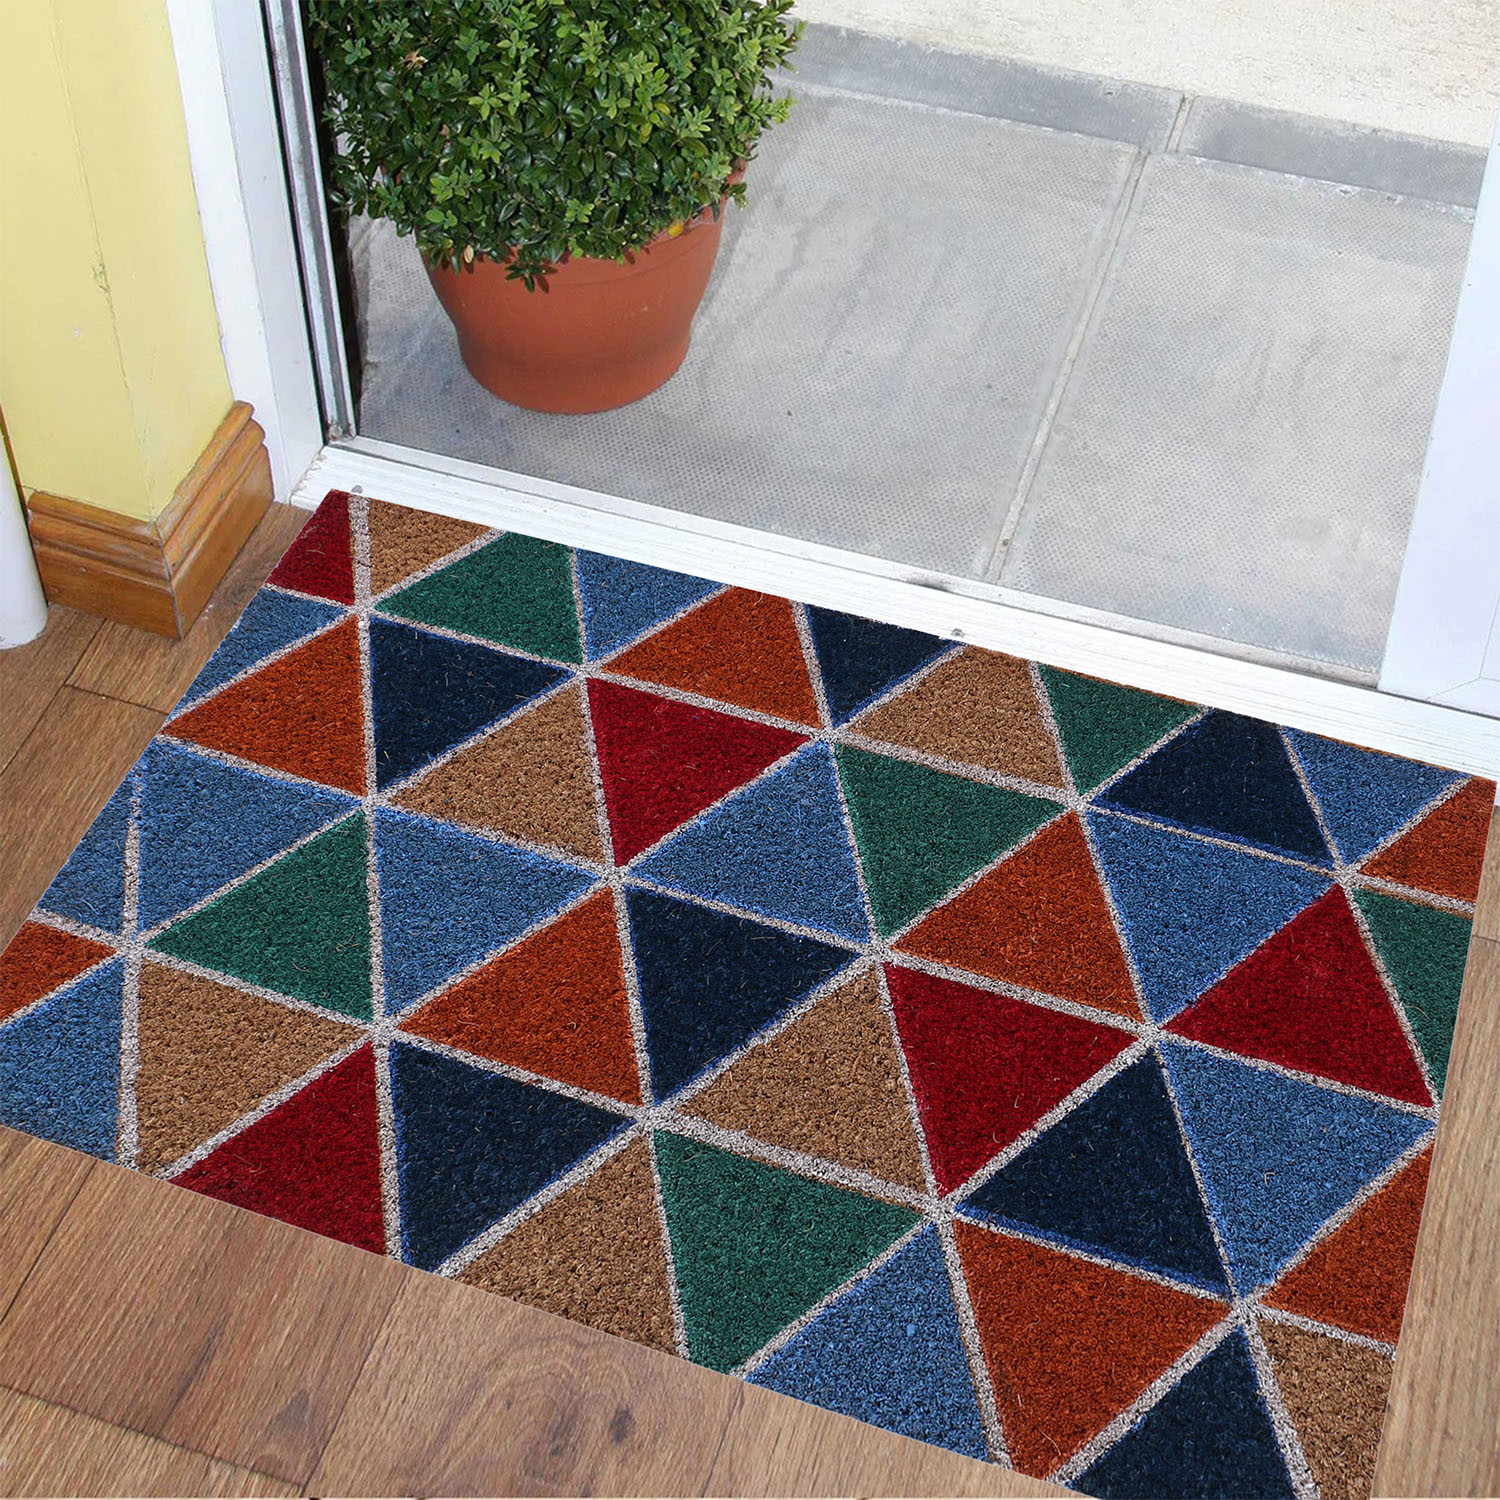 Kuber Industries Door Mat|Polyethylene Durable & Anti-Slip Natural Triangle Print Floor Mat|Rug For Indoor or Outdoor, 30x20 Inch (Brown)